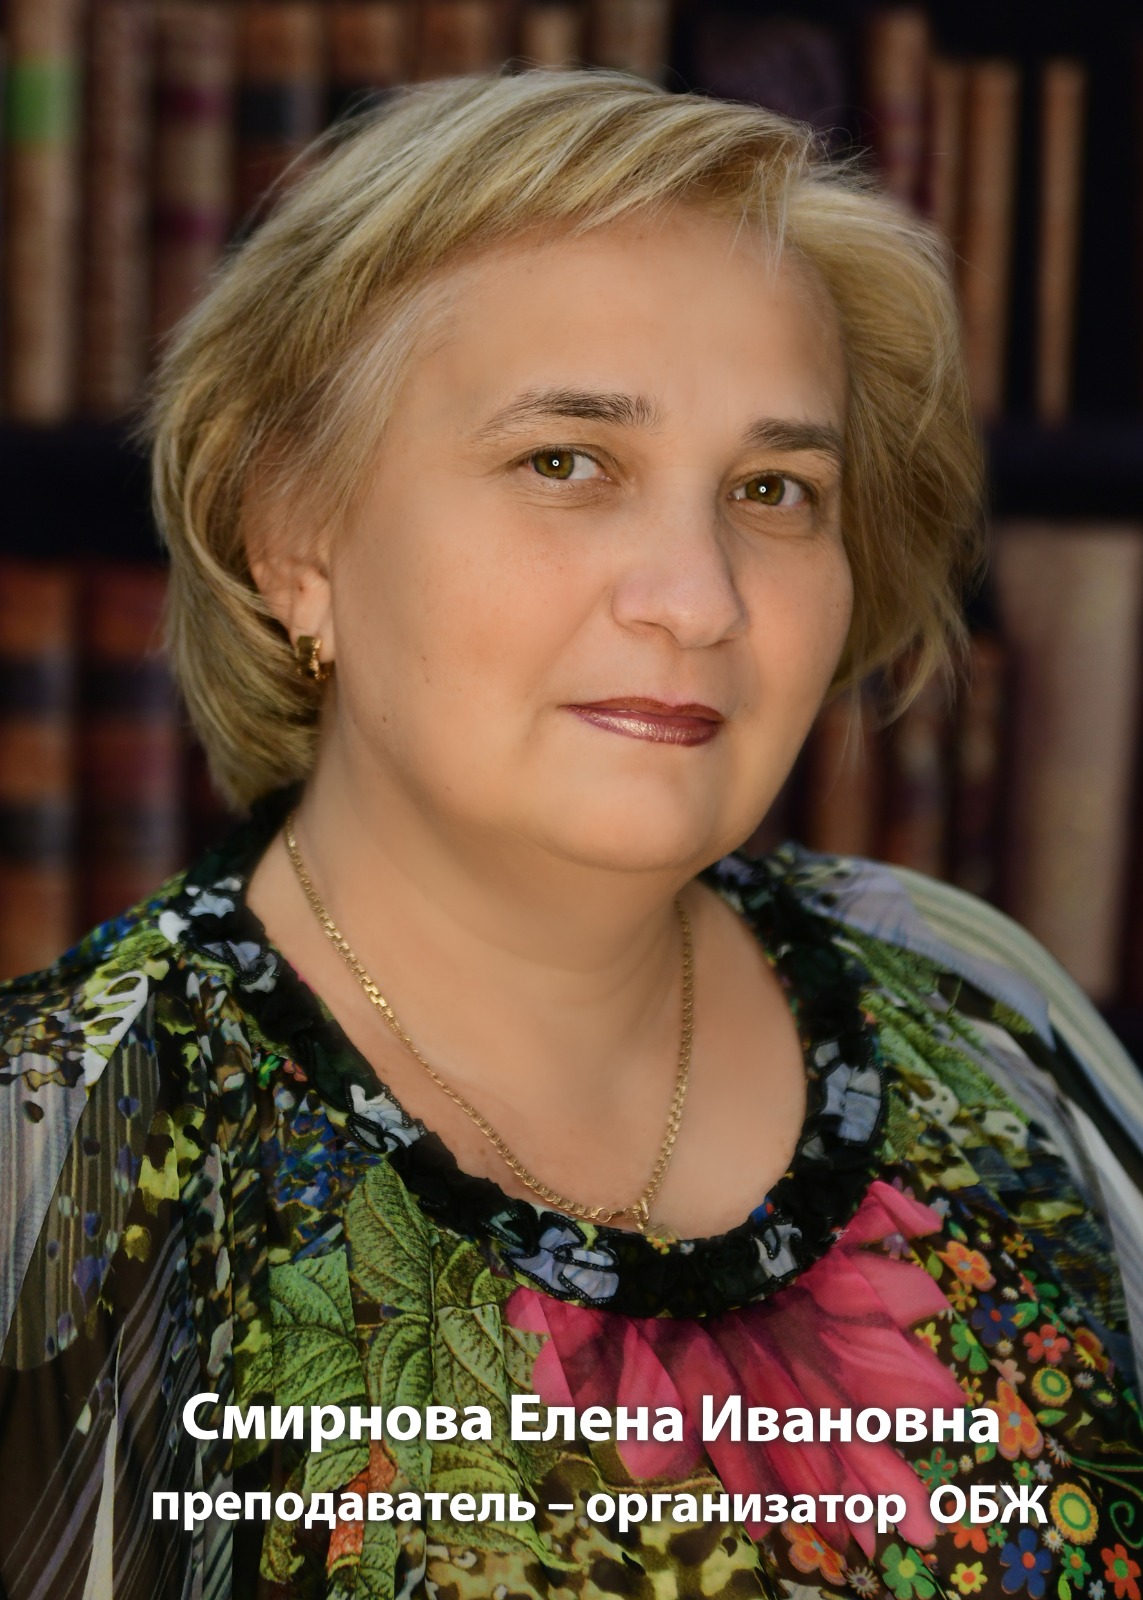 Смирнова Елена Ивановна.